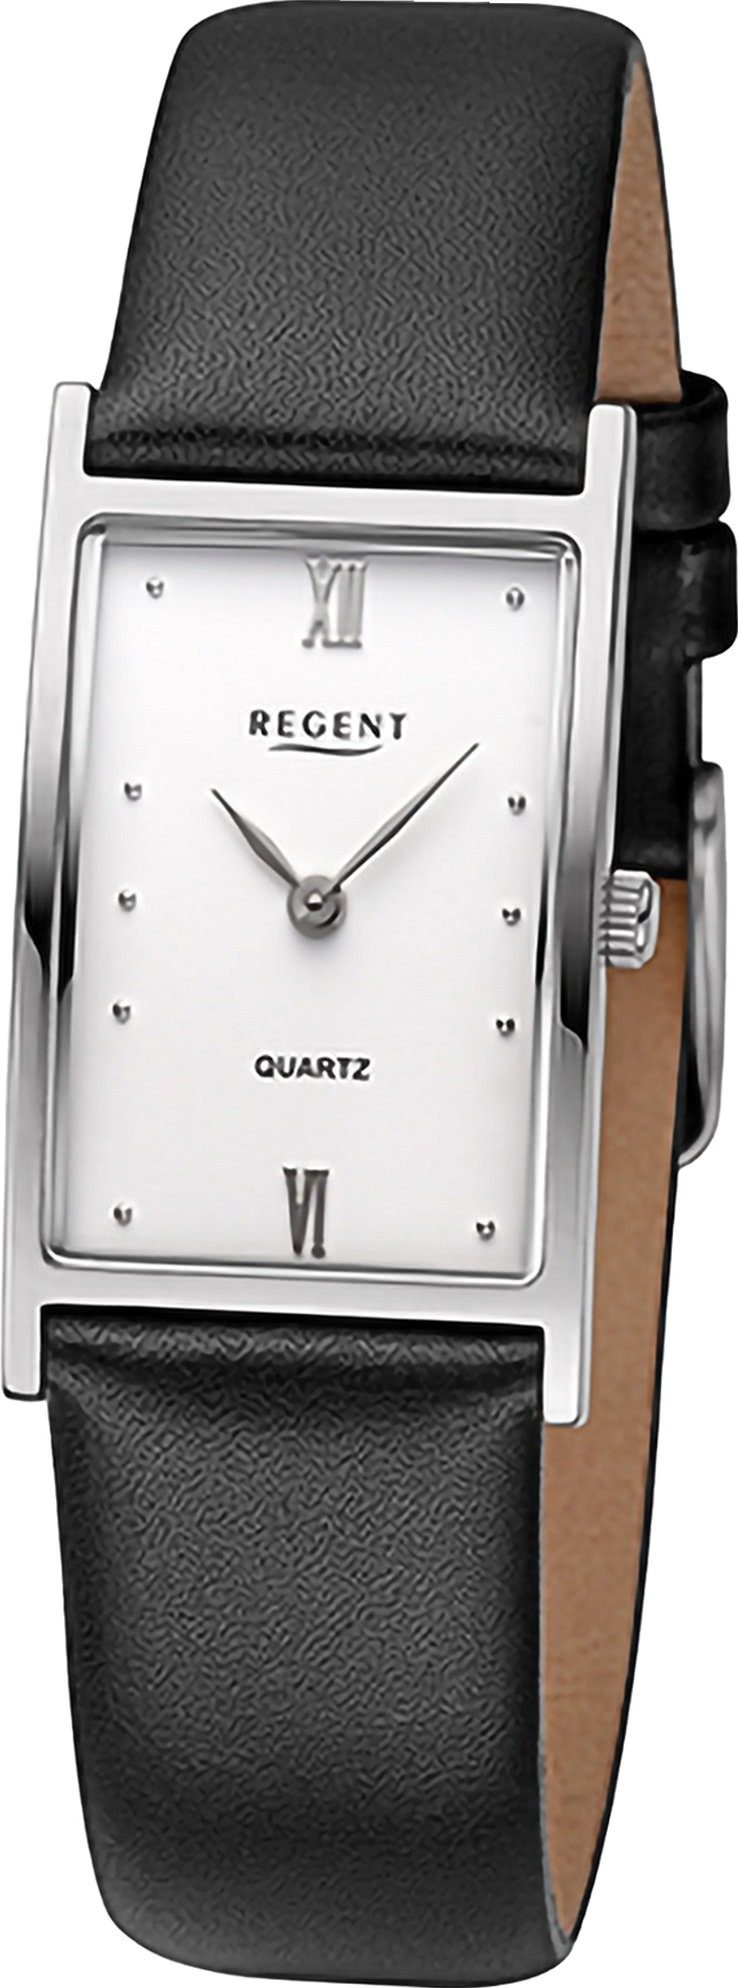 Damen 21x30mm), Damen rund, Quarzuhr Regent Armbanduhr Regent (ca. Lederarmband extra groß Armbanduhr Analog,